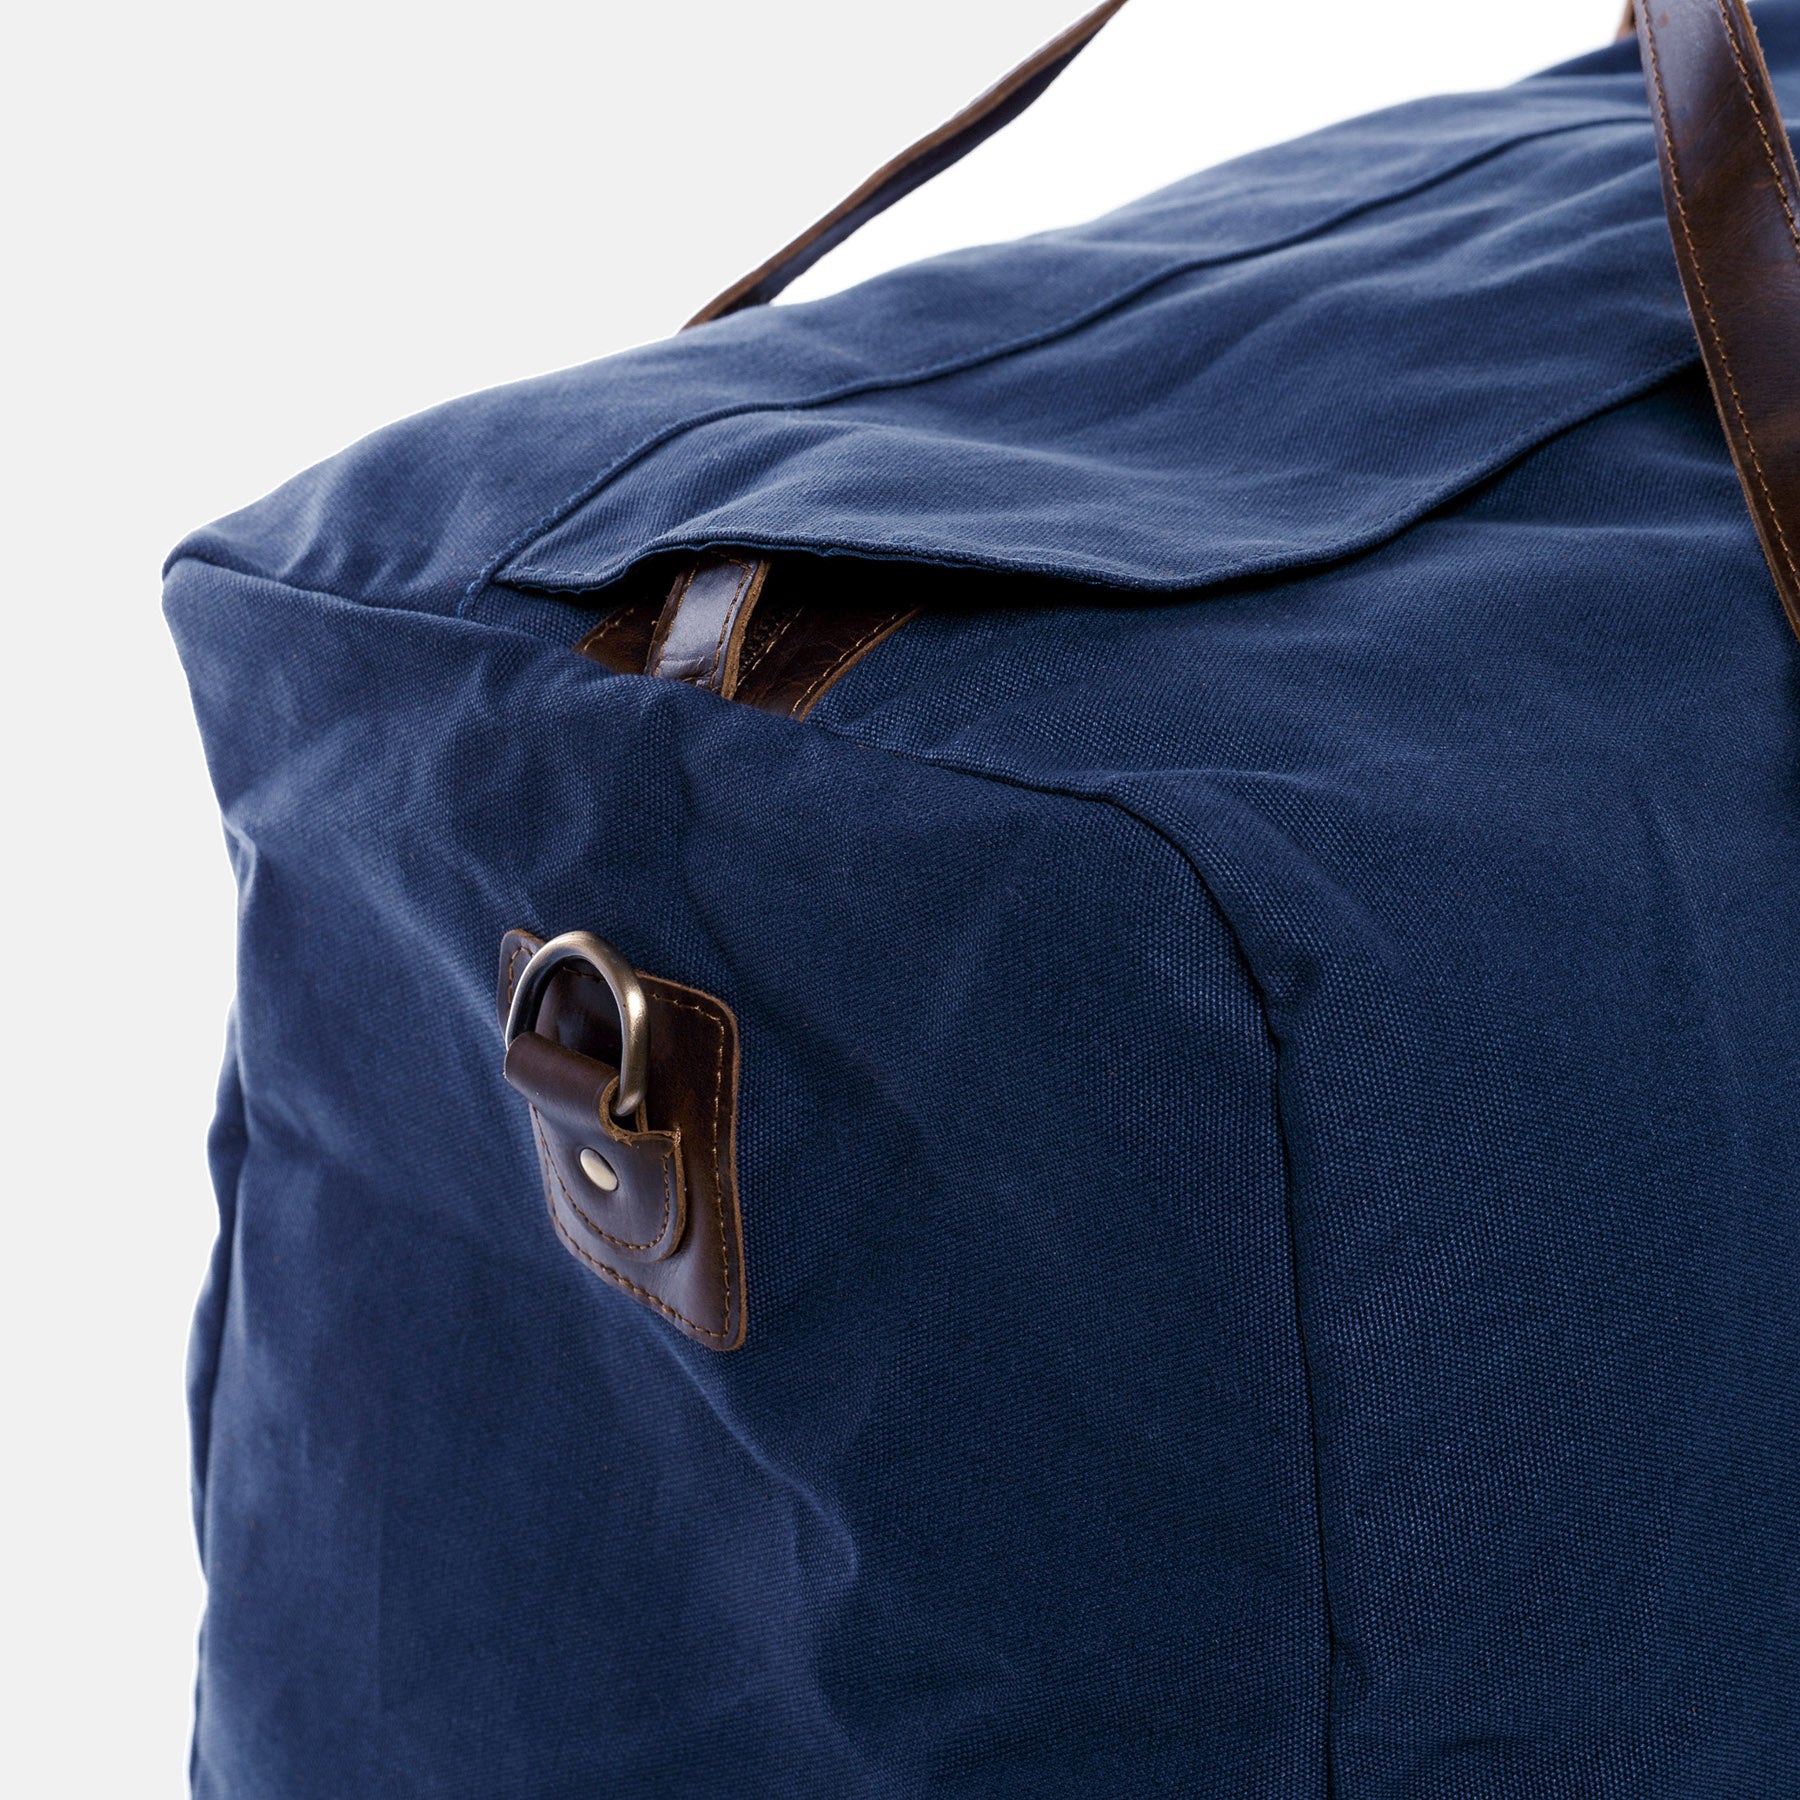 XL Reisetasche CHASE Canvas&Leder blau-braun